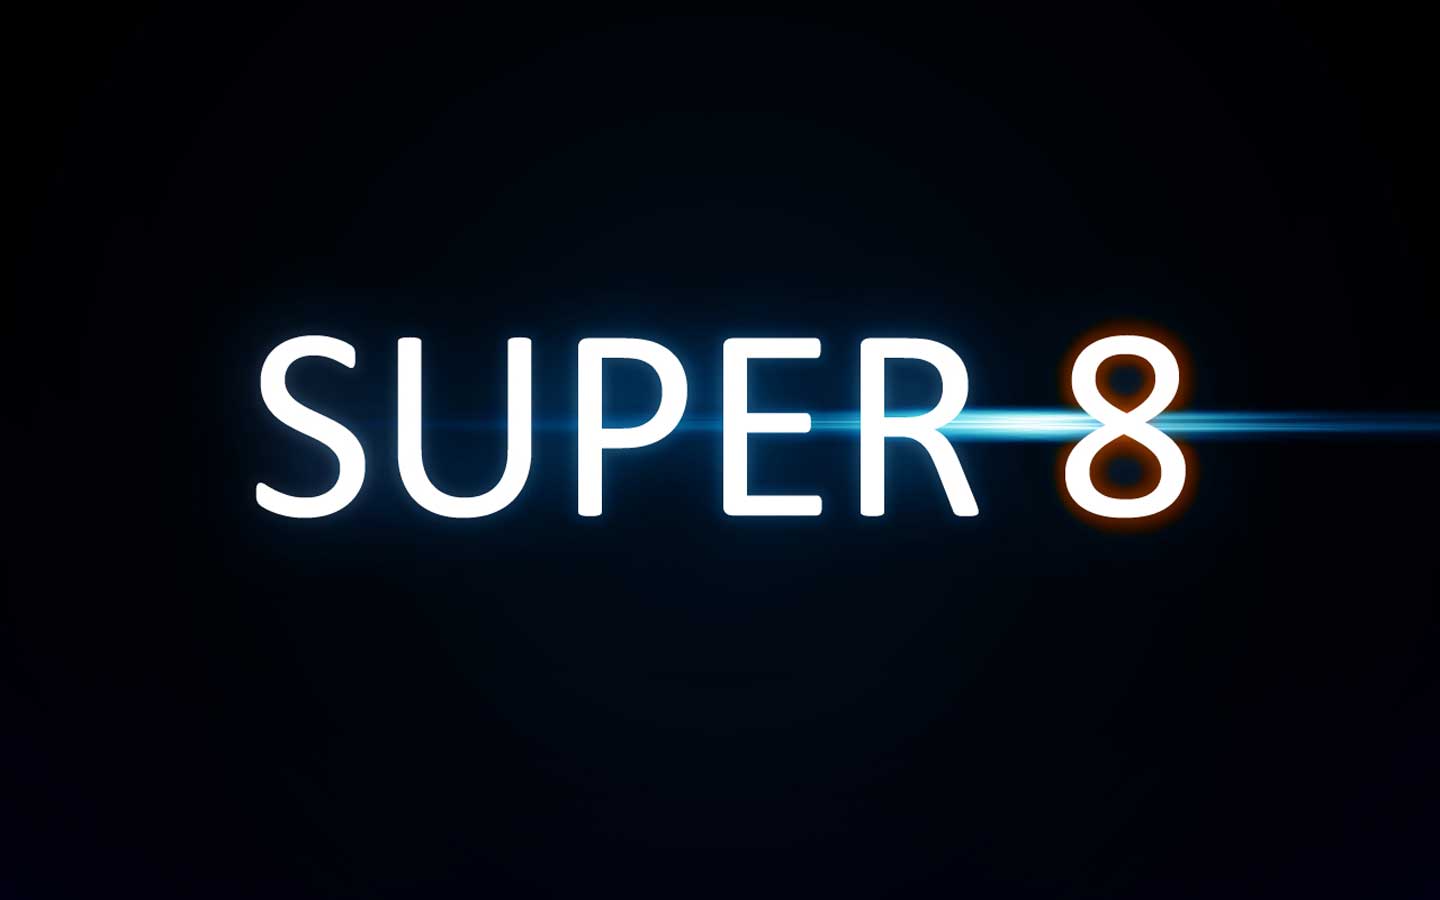 Super 8 Logo - Super 8 Logo wallpaper | 1440x900 | #27853